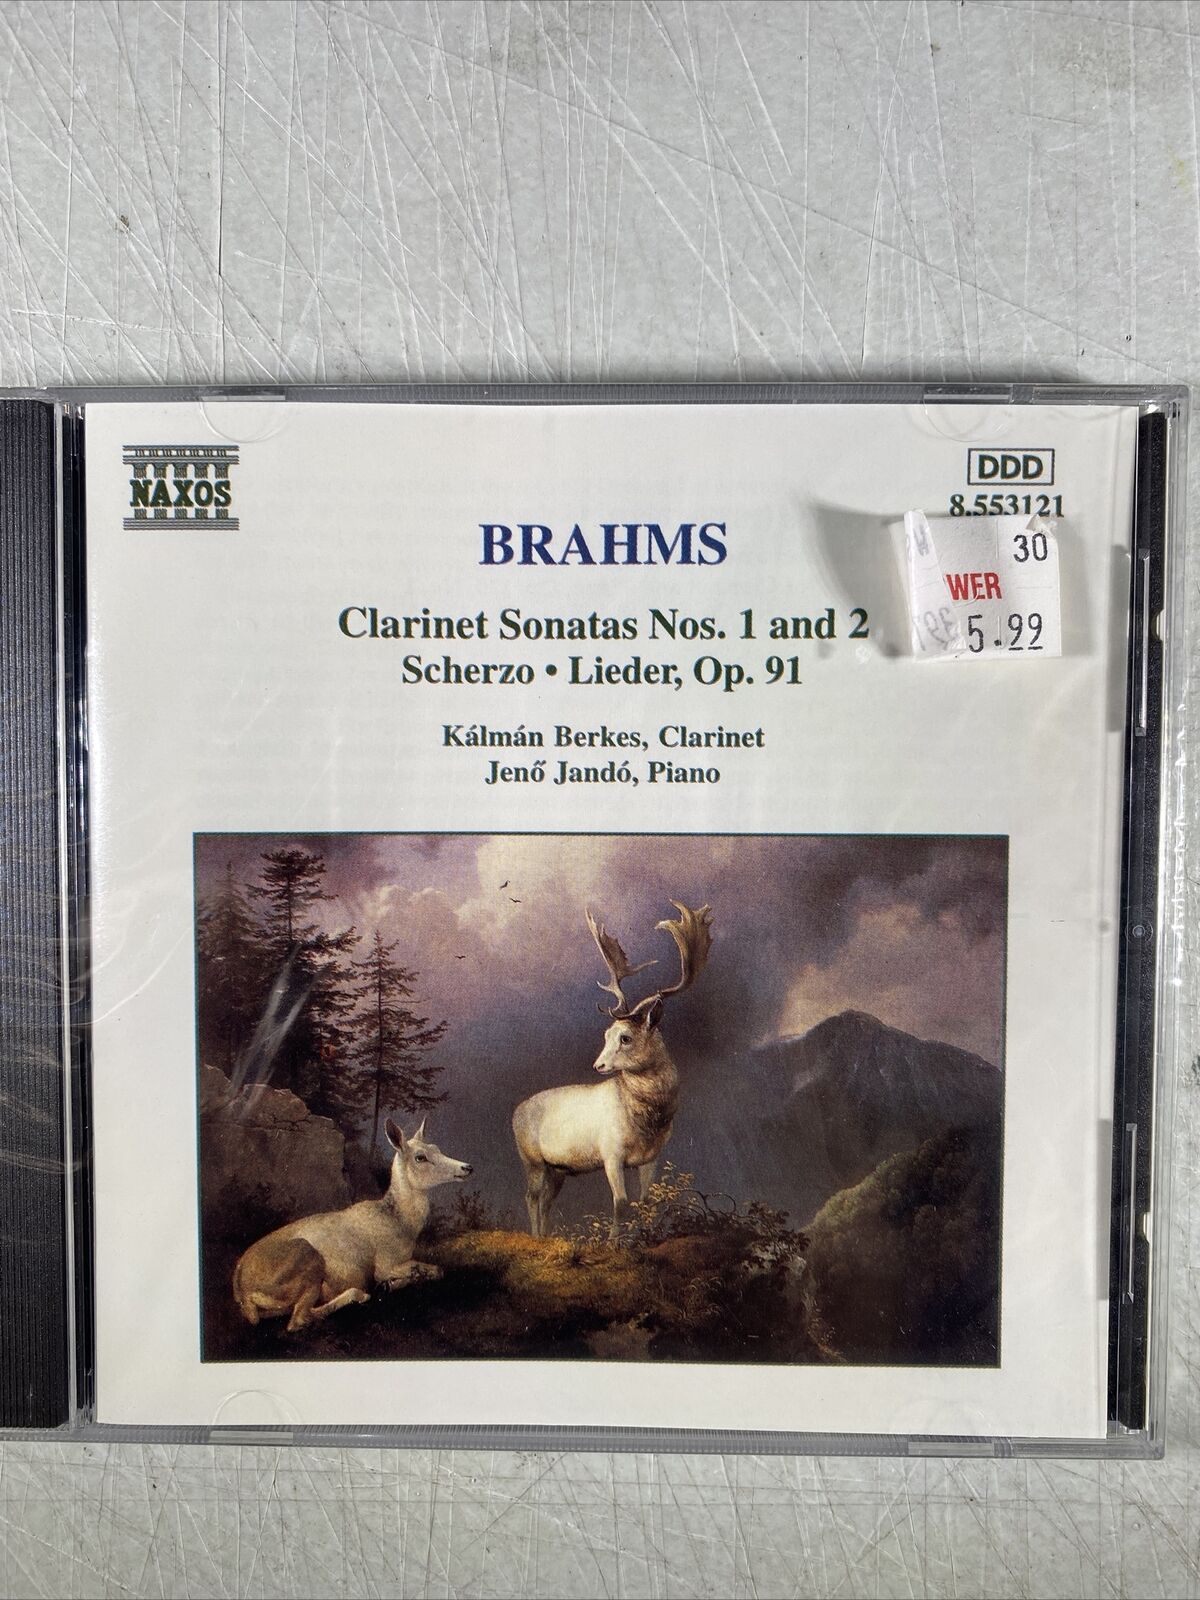 Brahms - Clarinet Sonatas Nos. 1 and 2 , Scherzo Lieder, Op. 91 | CD, 1996